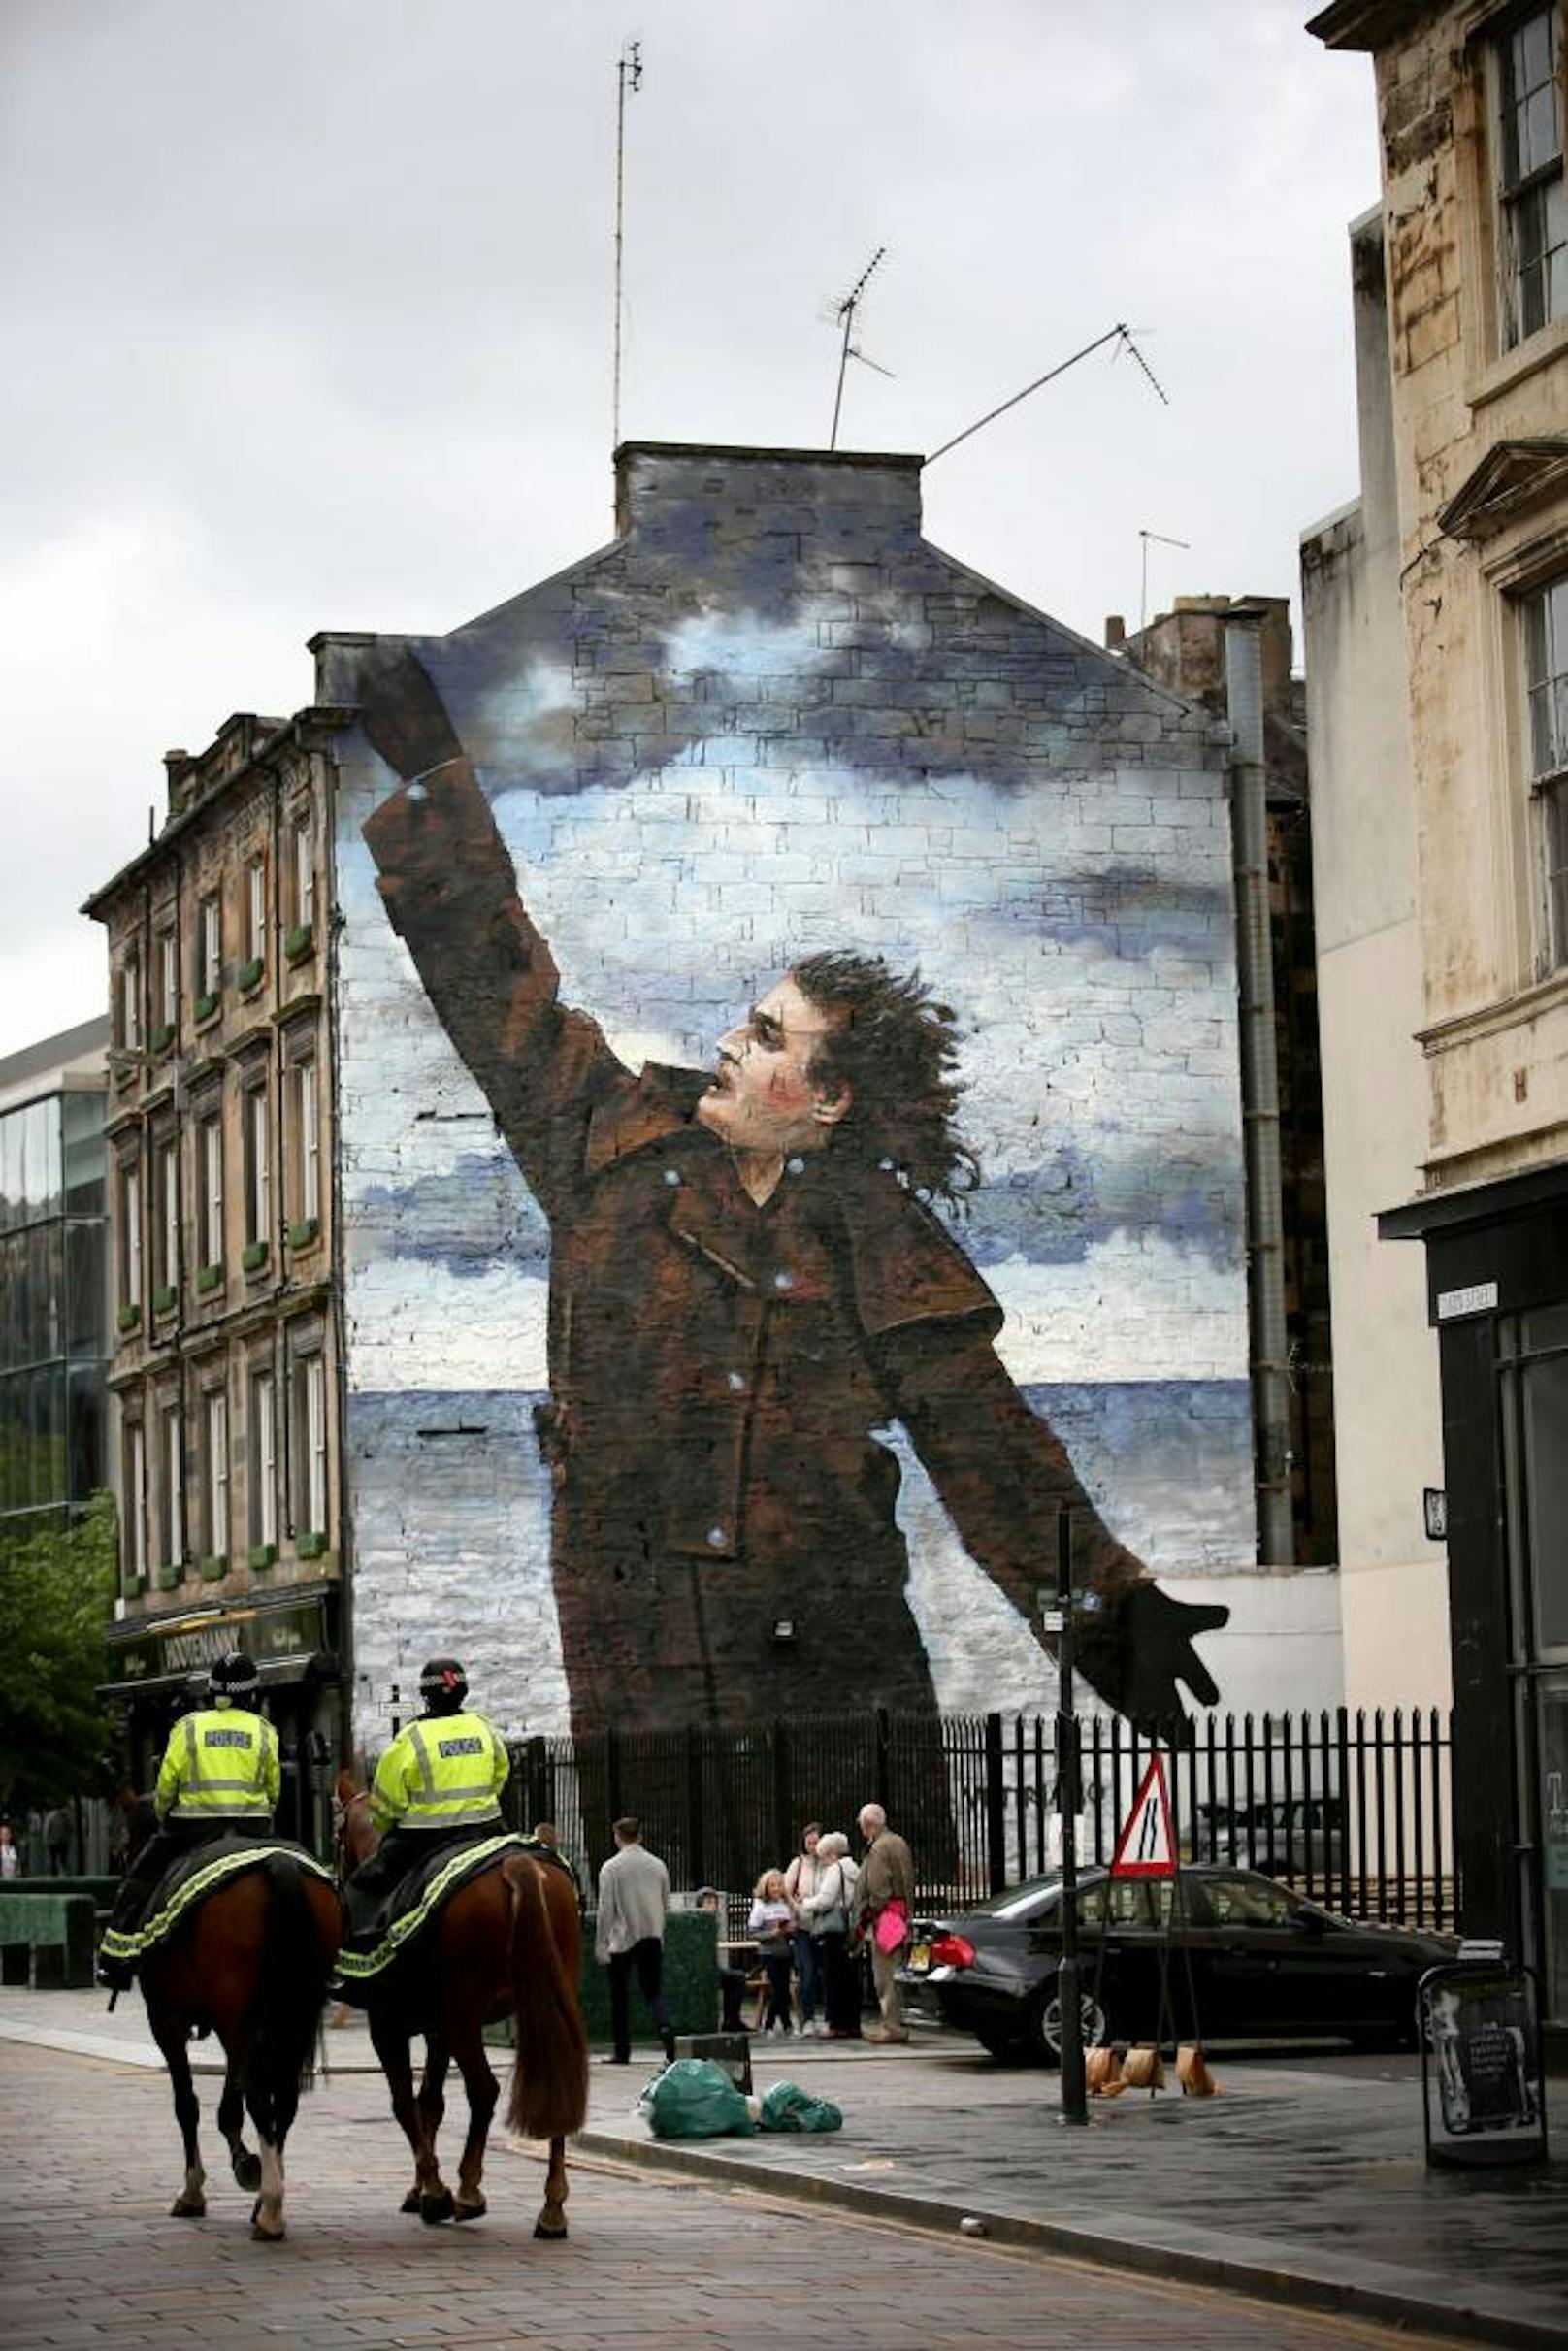 Glasgow ehrt Billy Connolly mit drei riesigen Wandgemälden. Hier die Arbeit von Jack Vettriano.